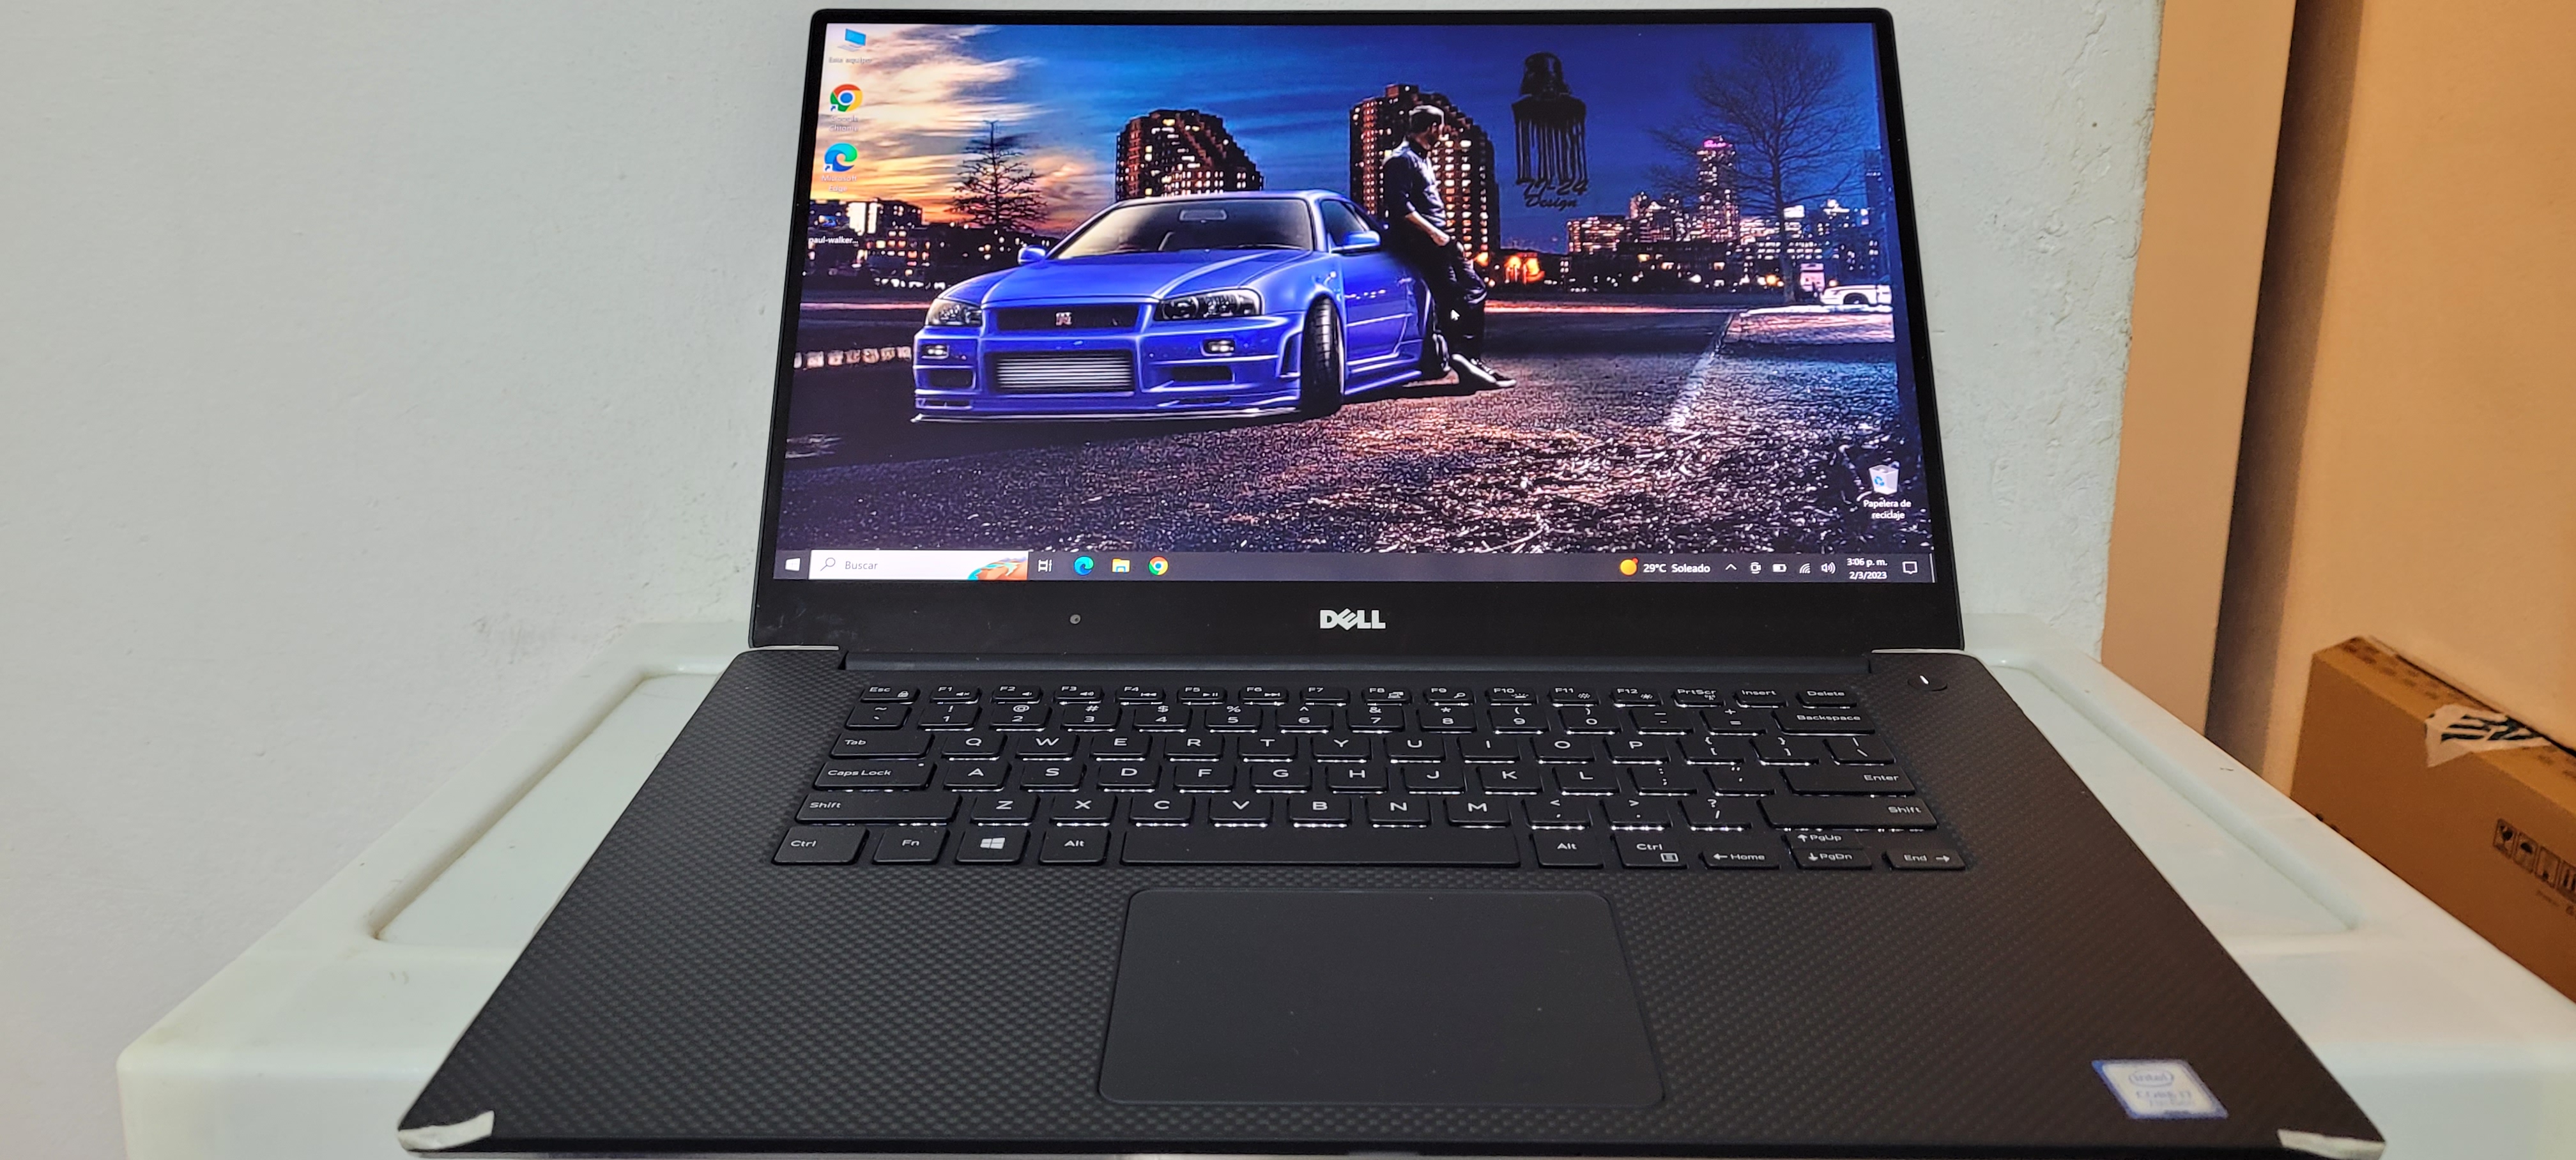 computadoras y laptops - Laptop Dell xps 15 Pulg Core i7 7ma Gen Ram 16gb DDR4 Nvidea Gtx 1050 4gb New